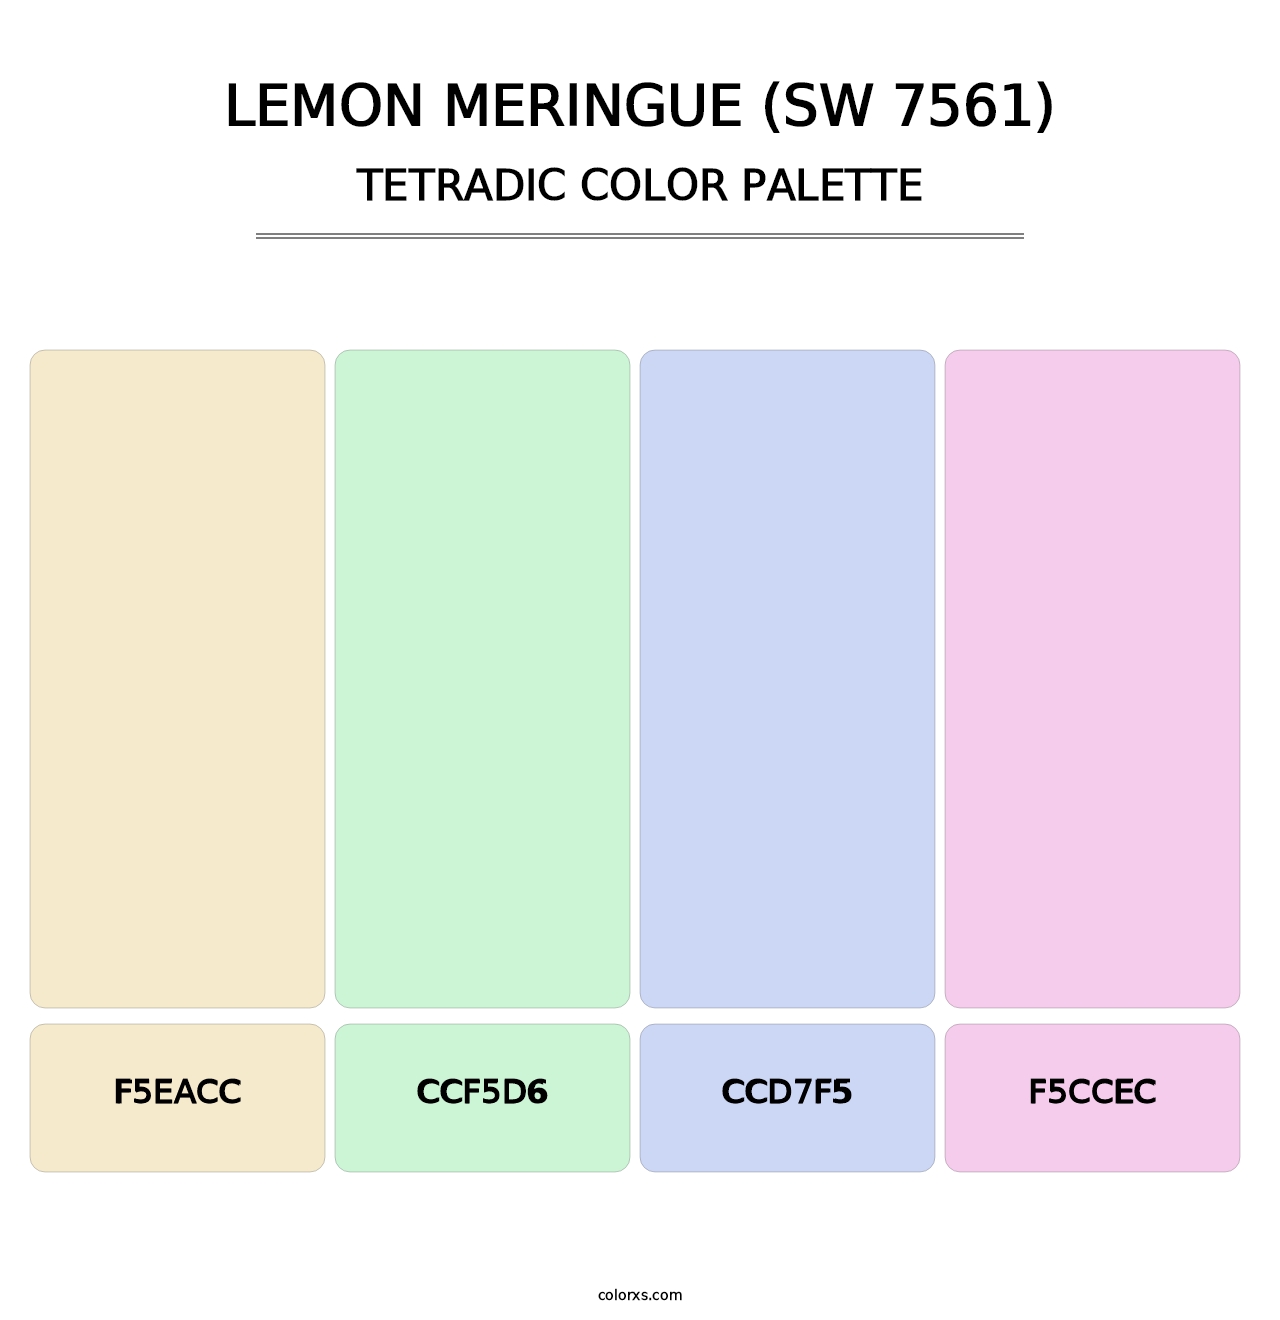 Lemon Meringue (SW 7561) - Tetradic Color Palette